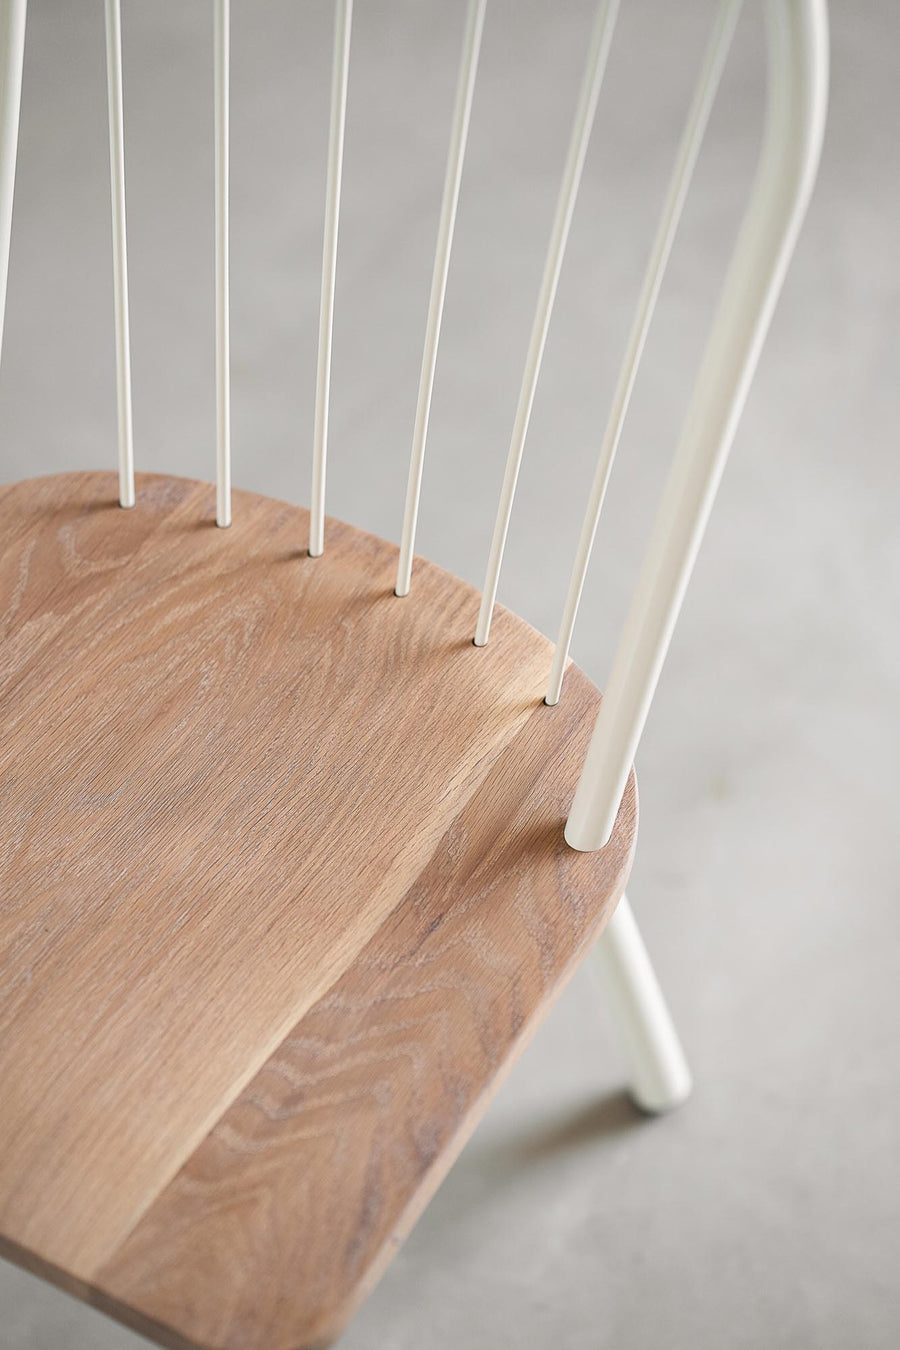 Fluted Dining Chair - Pedersen + Lennard